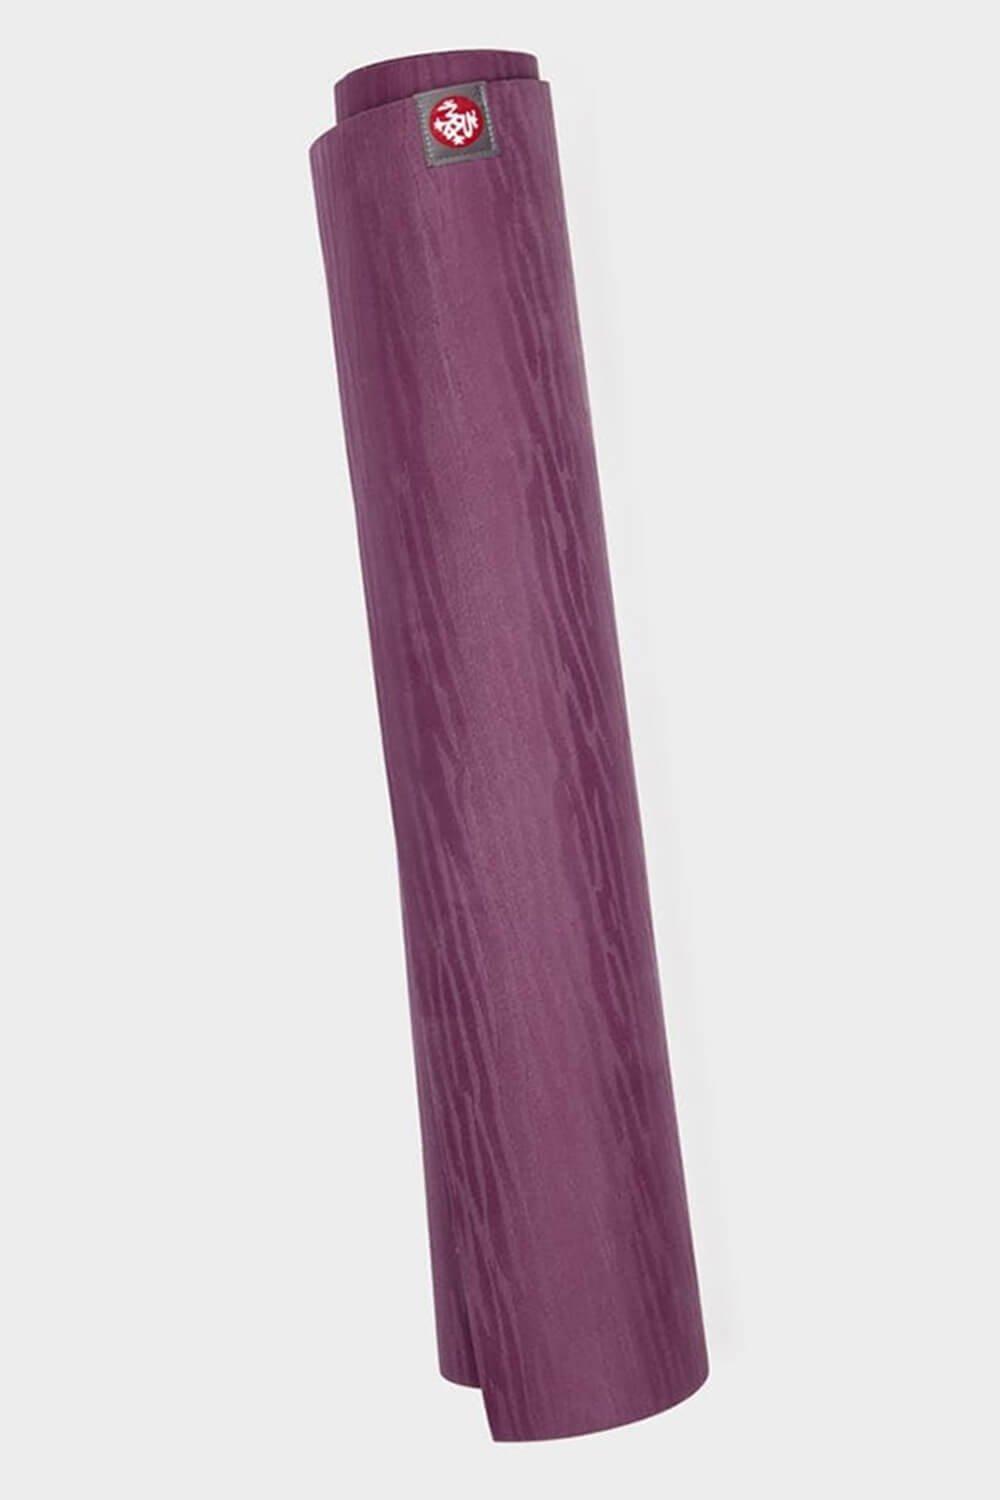 eKO Lite 79 Длинный коврик для йоги 4 мм Manduka, фиолетовый